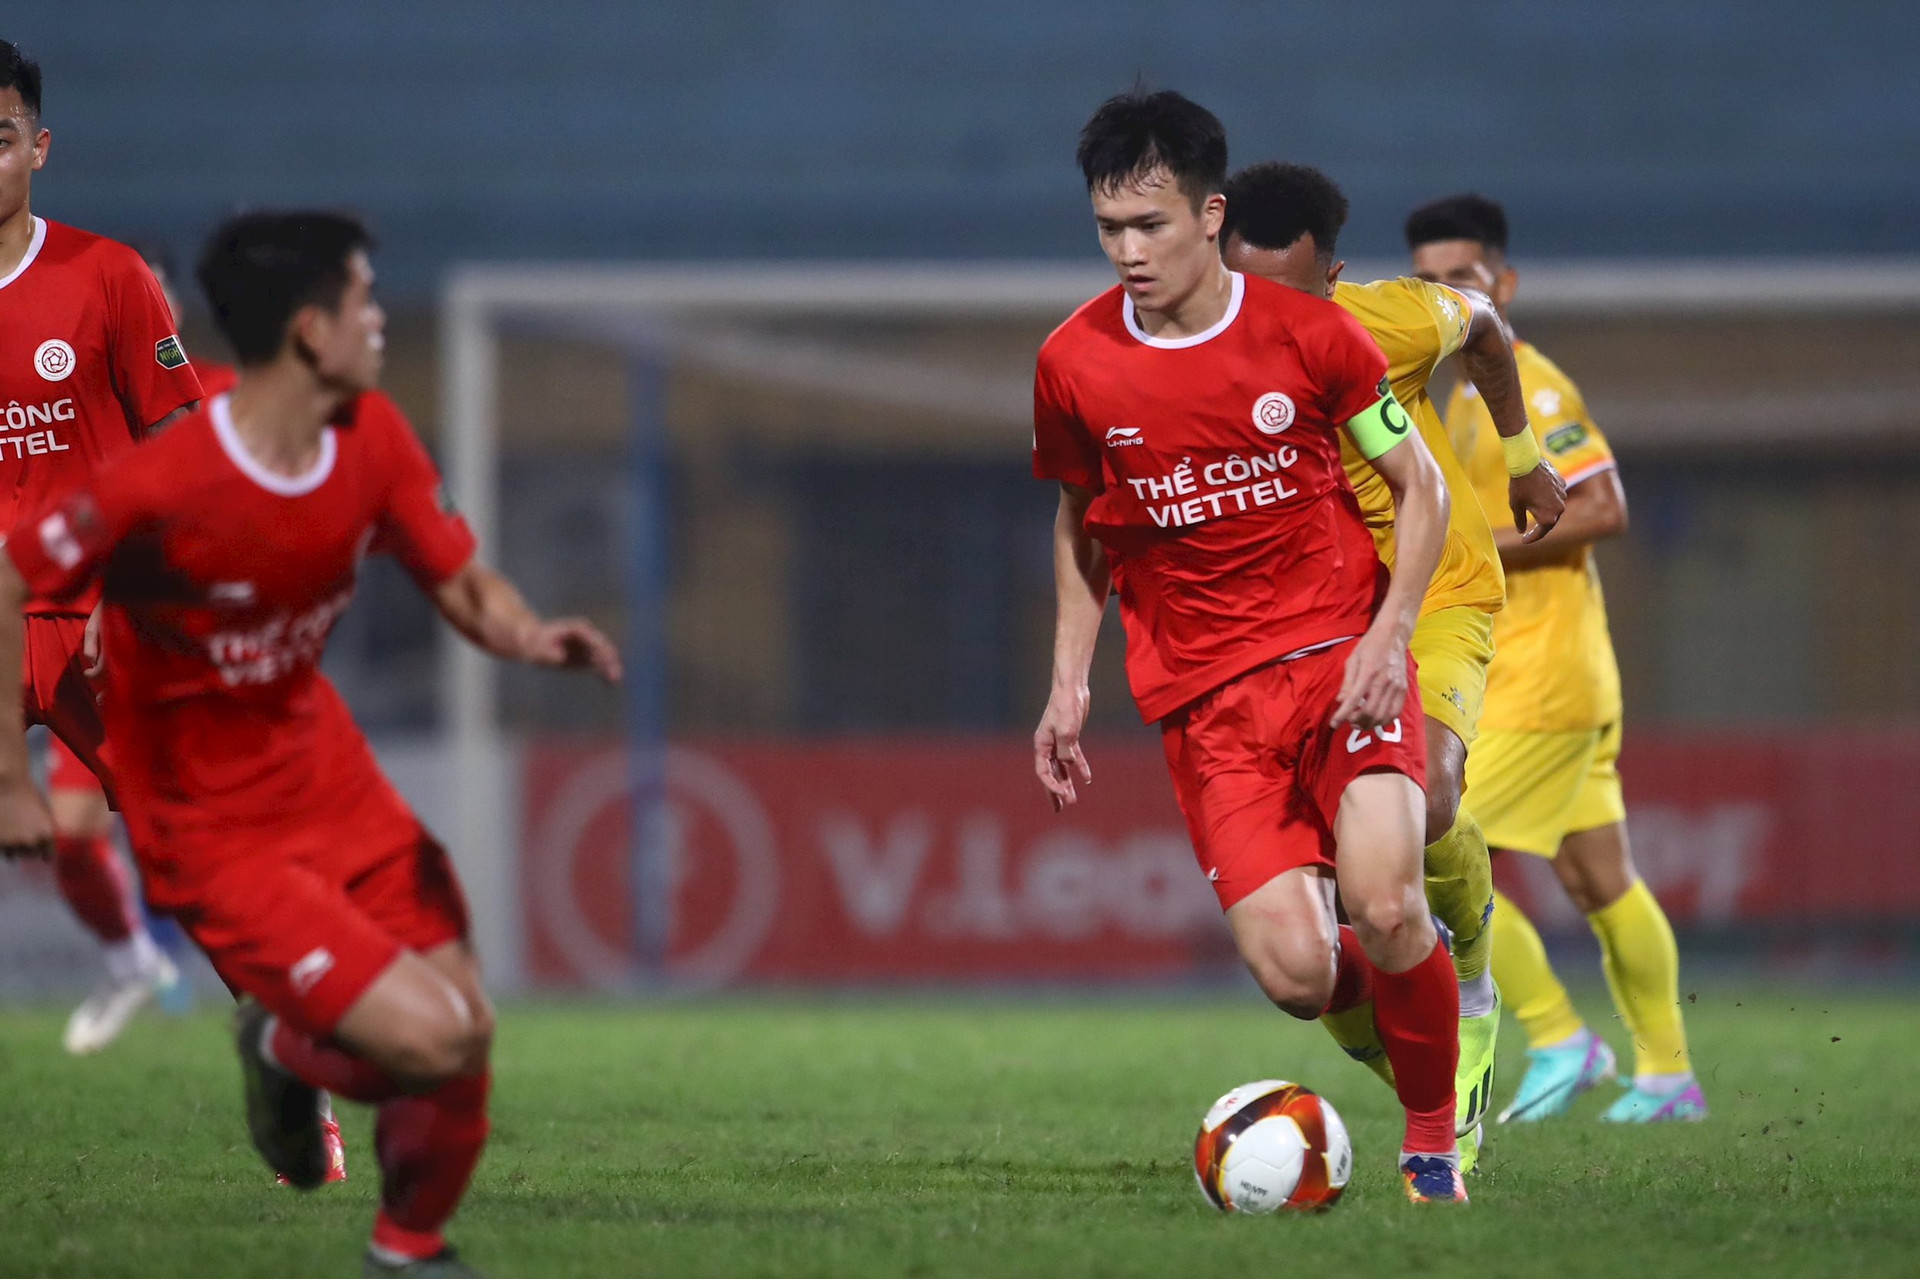 Lội ngược dòng, Thể Công - Viettel đánh bại Quảng Nam FC